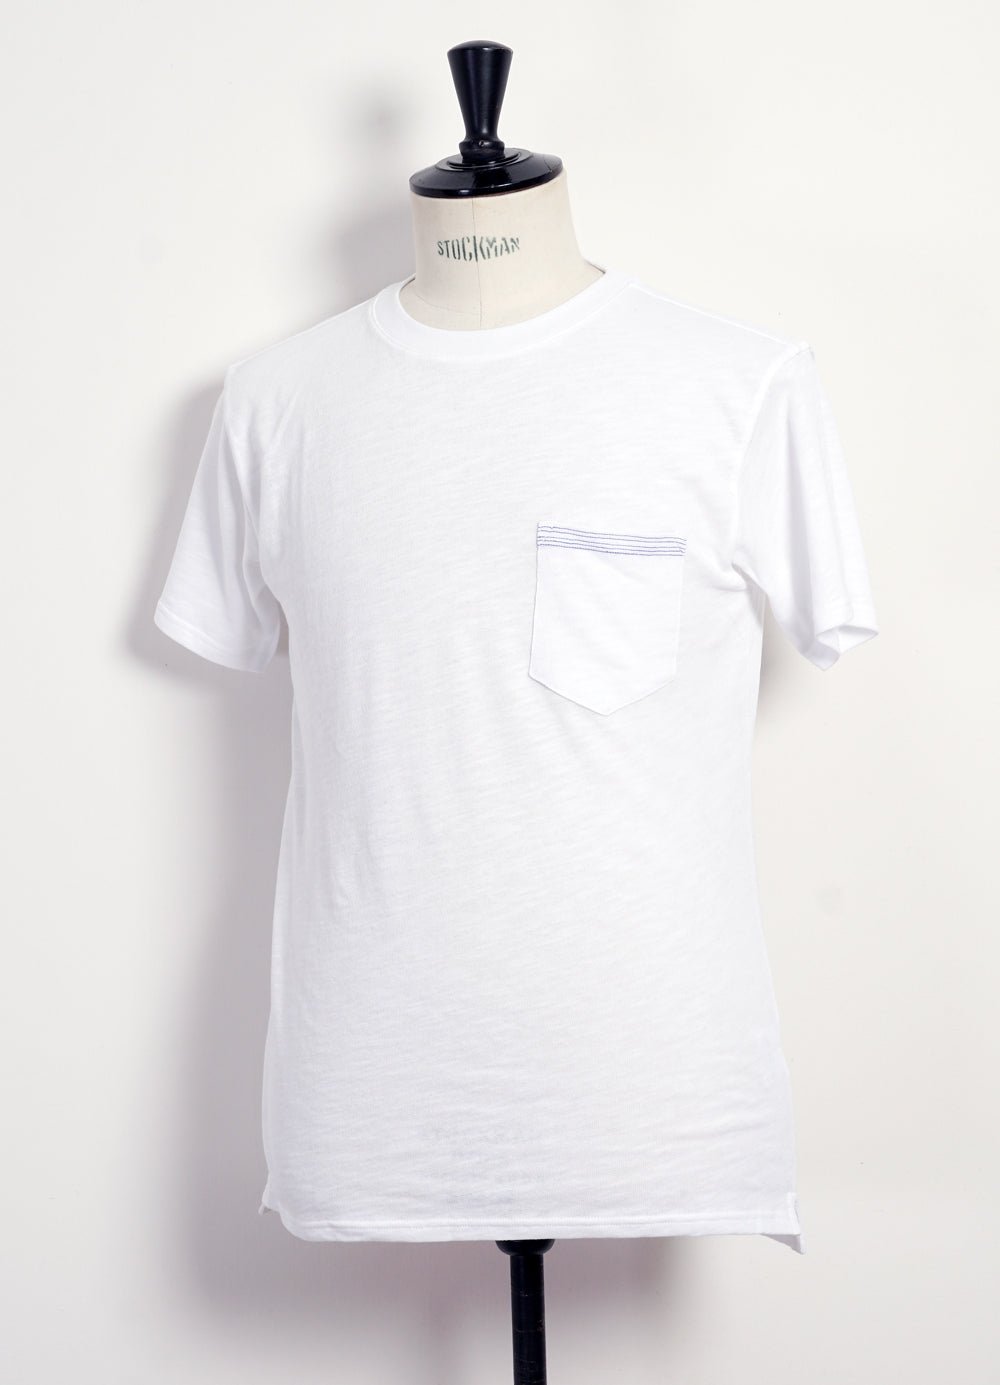 HANSEN GARMENTS - JAMES | Crew Neck Pocket T | White - HANSEN Garments